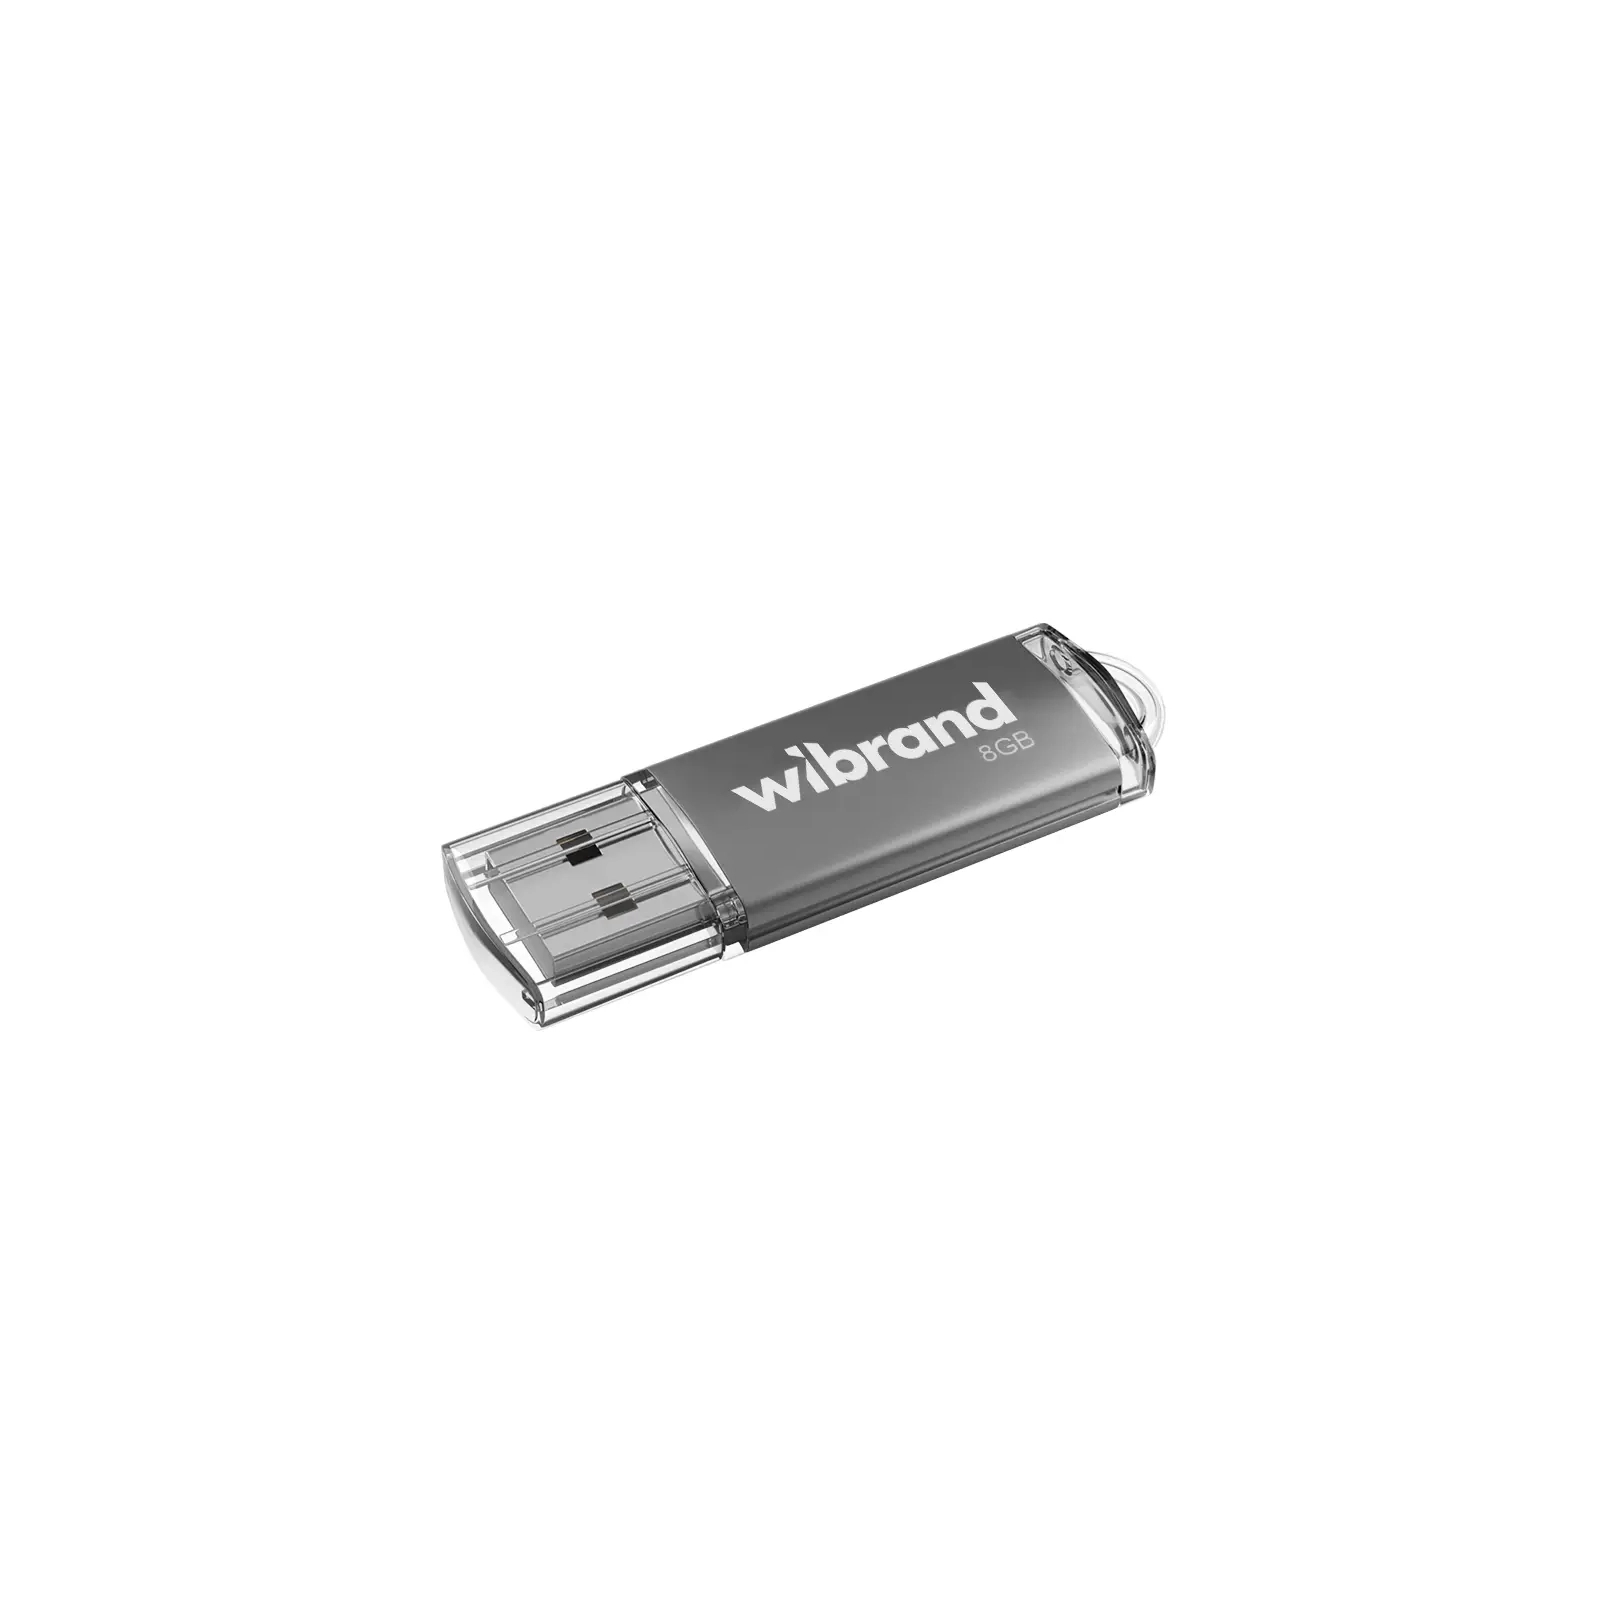 USB флеш накопитель Wibrand 8GB Cougar Blue USB 2.0 (WI2.0/CU8P1U)